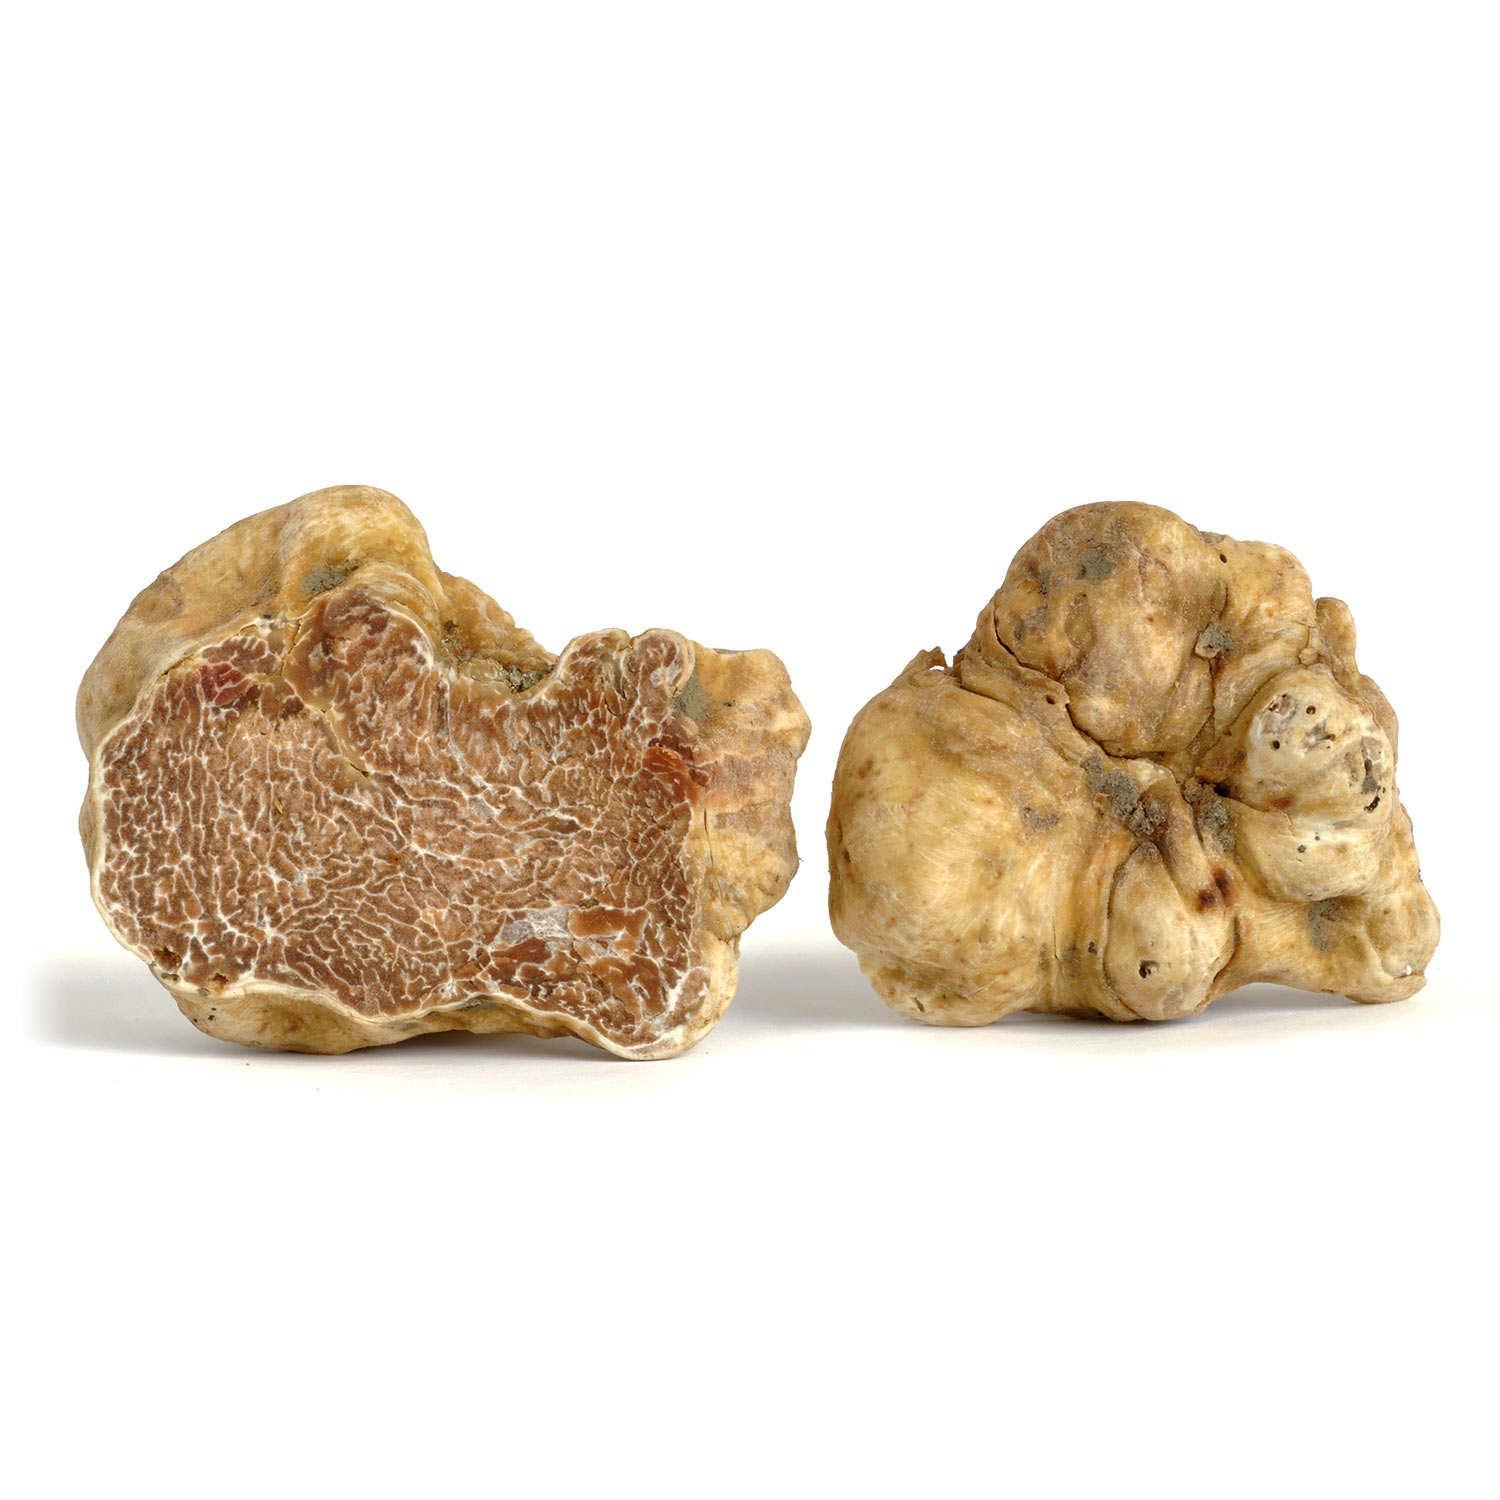 fresh white truffle magntum pico 250 gr / 9 oz